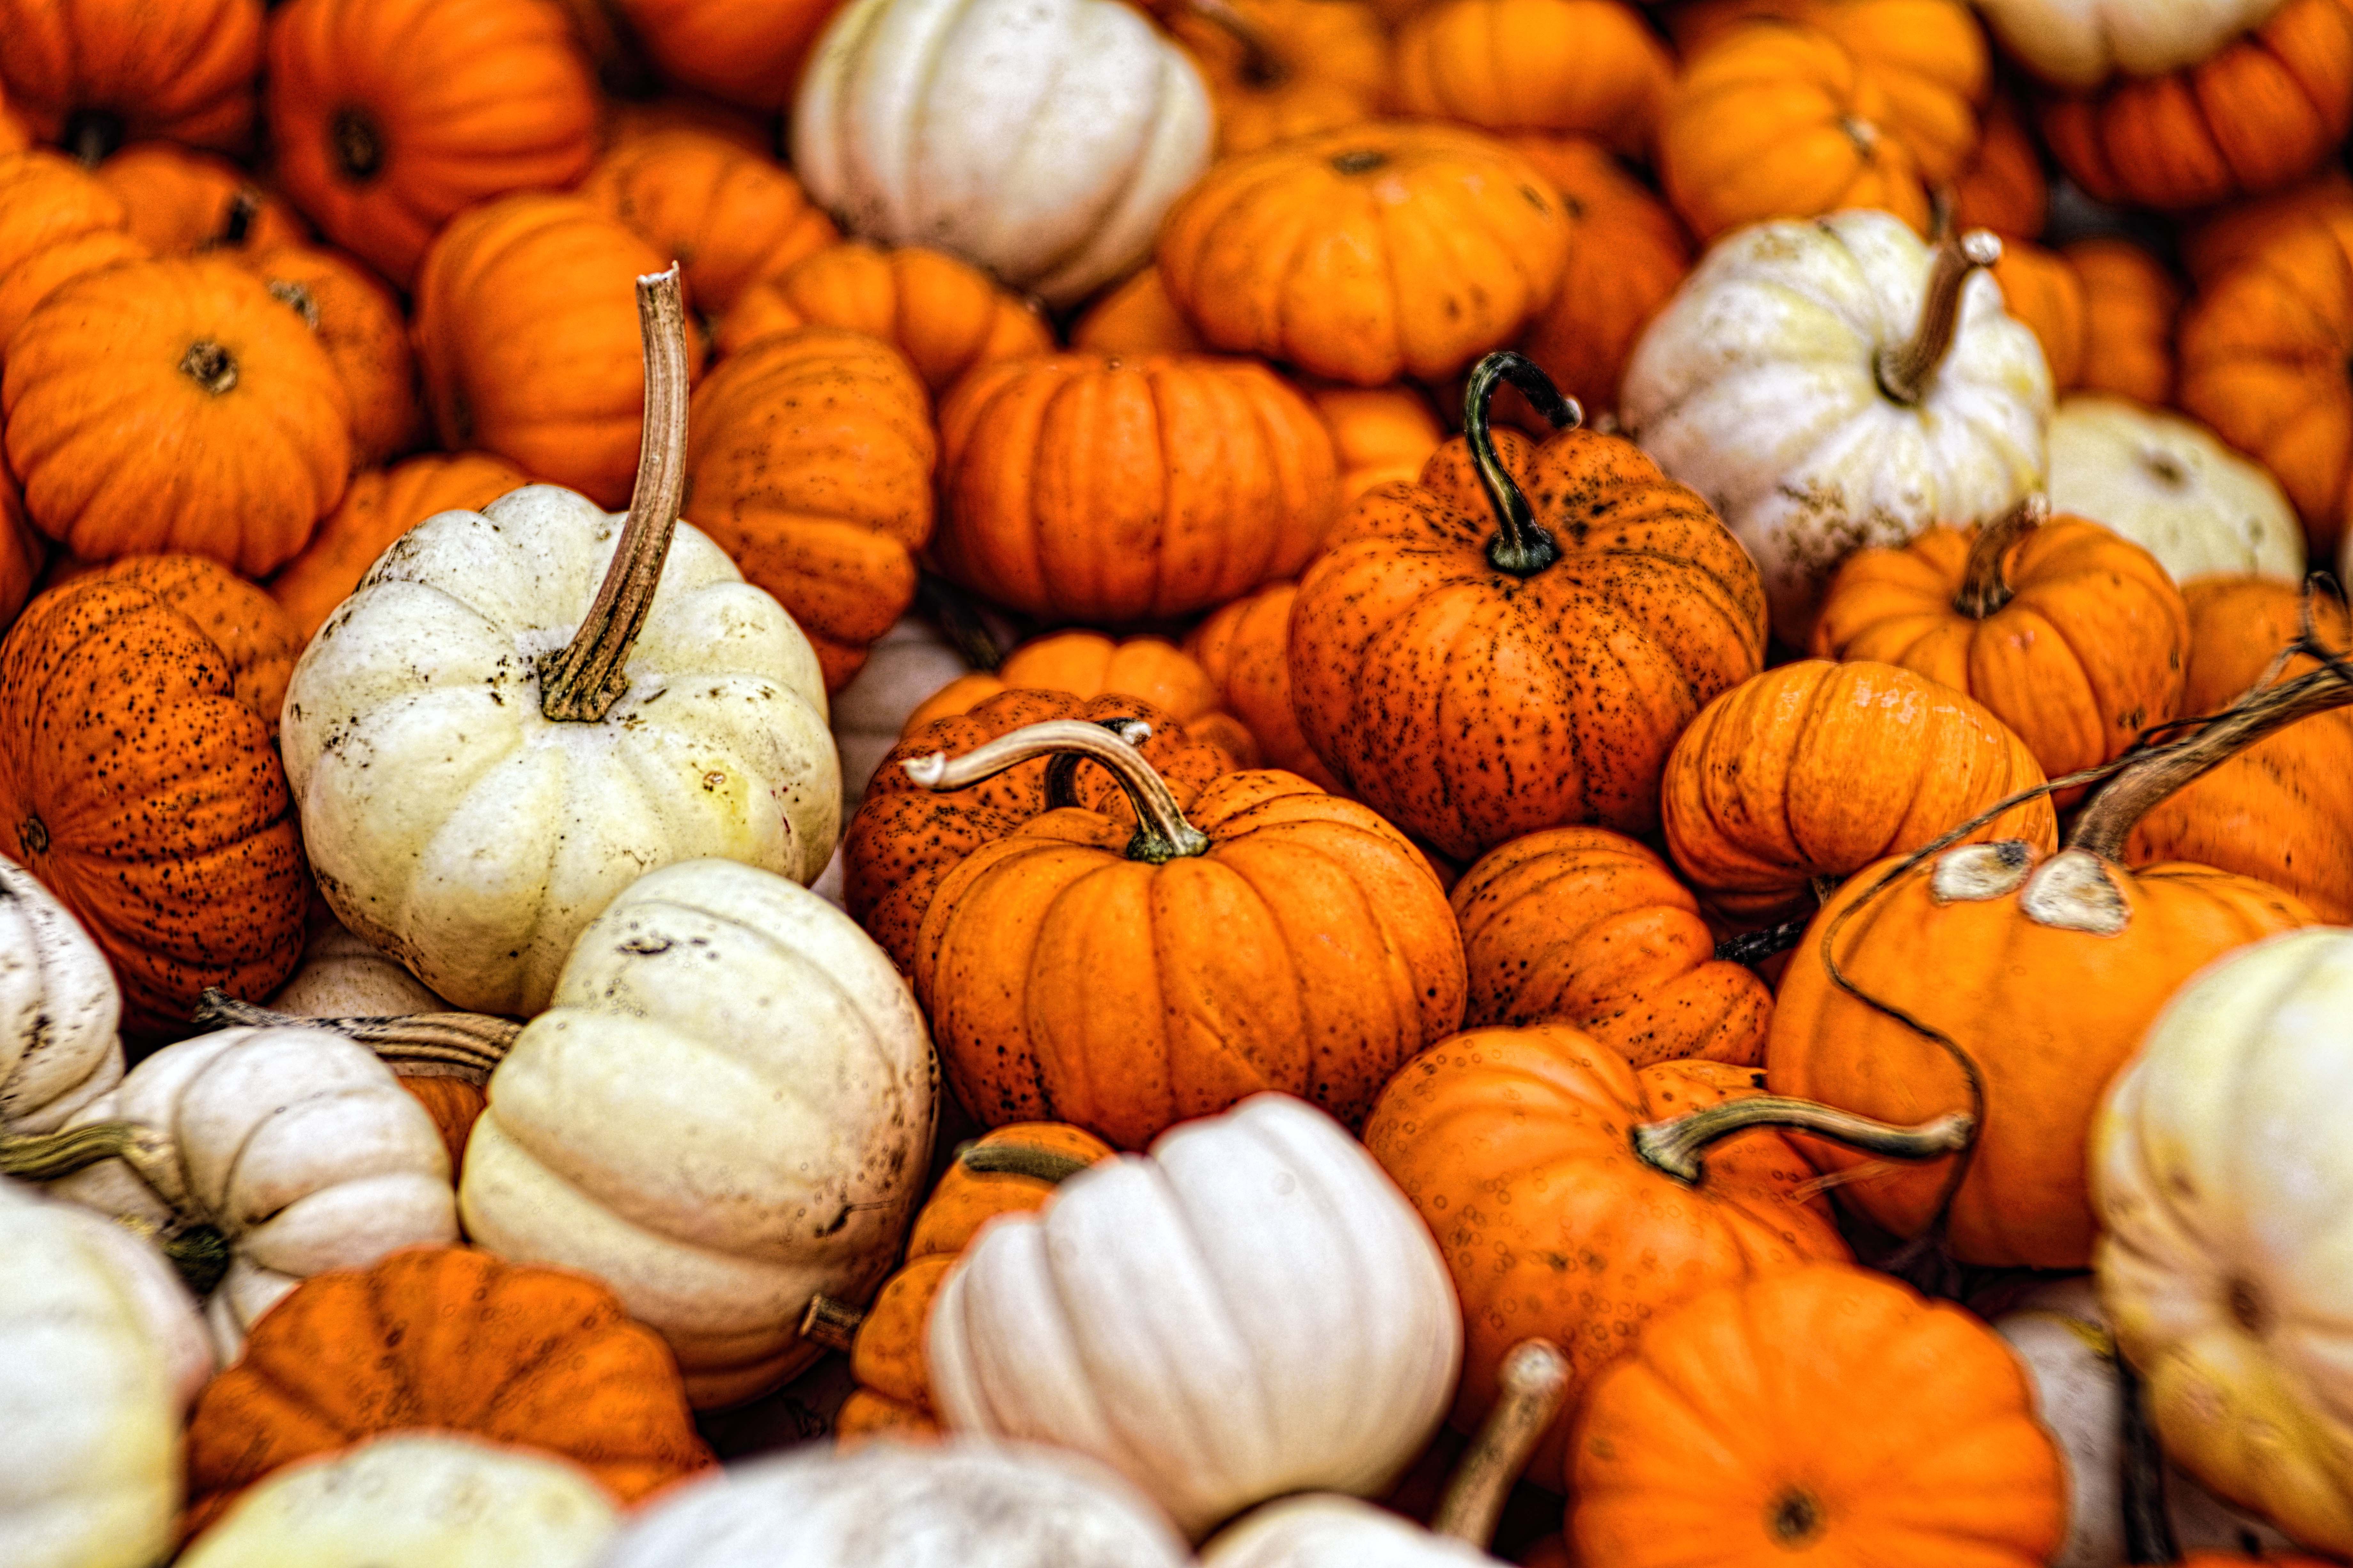 fall pumpkin desktop background